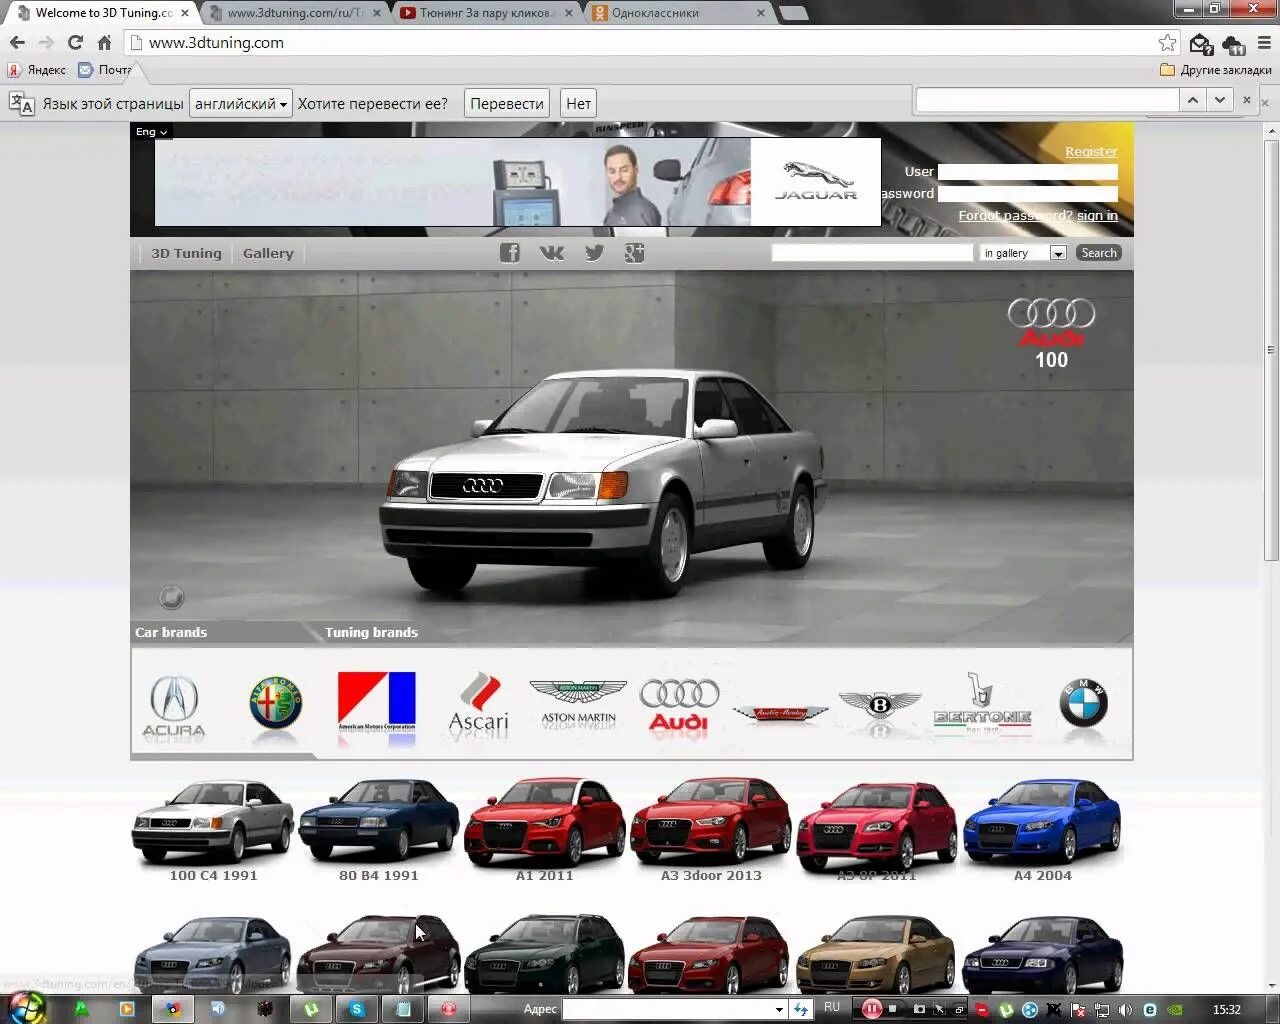 Виртуальный тюнинг автомобилей. Программа для тюнинга автомобилей. Приложение для тюнинга автомобилей. Программа виртуального тюнинга.